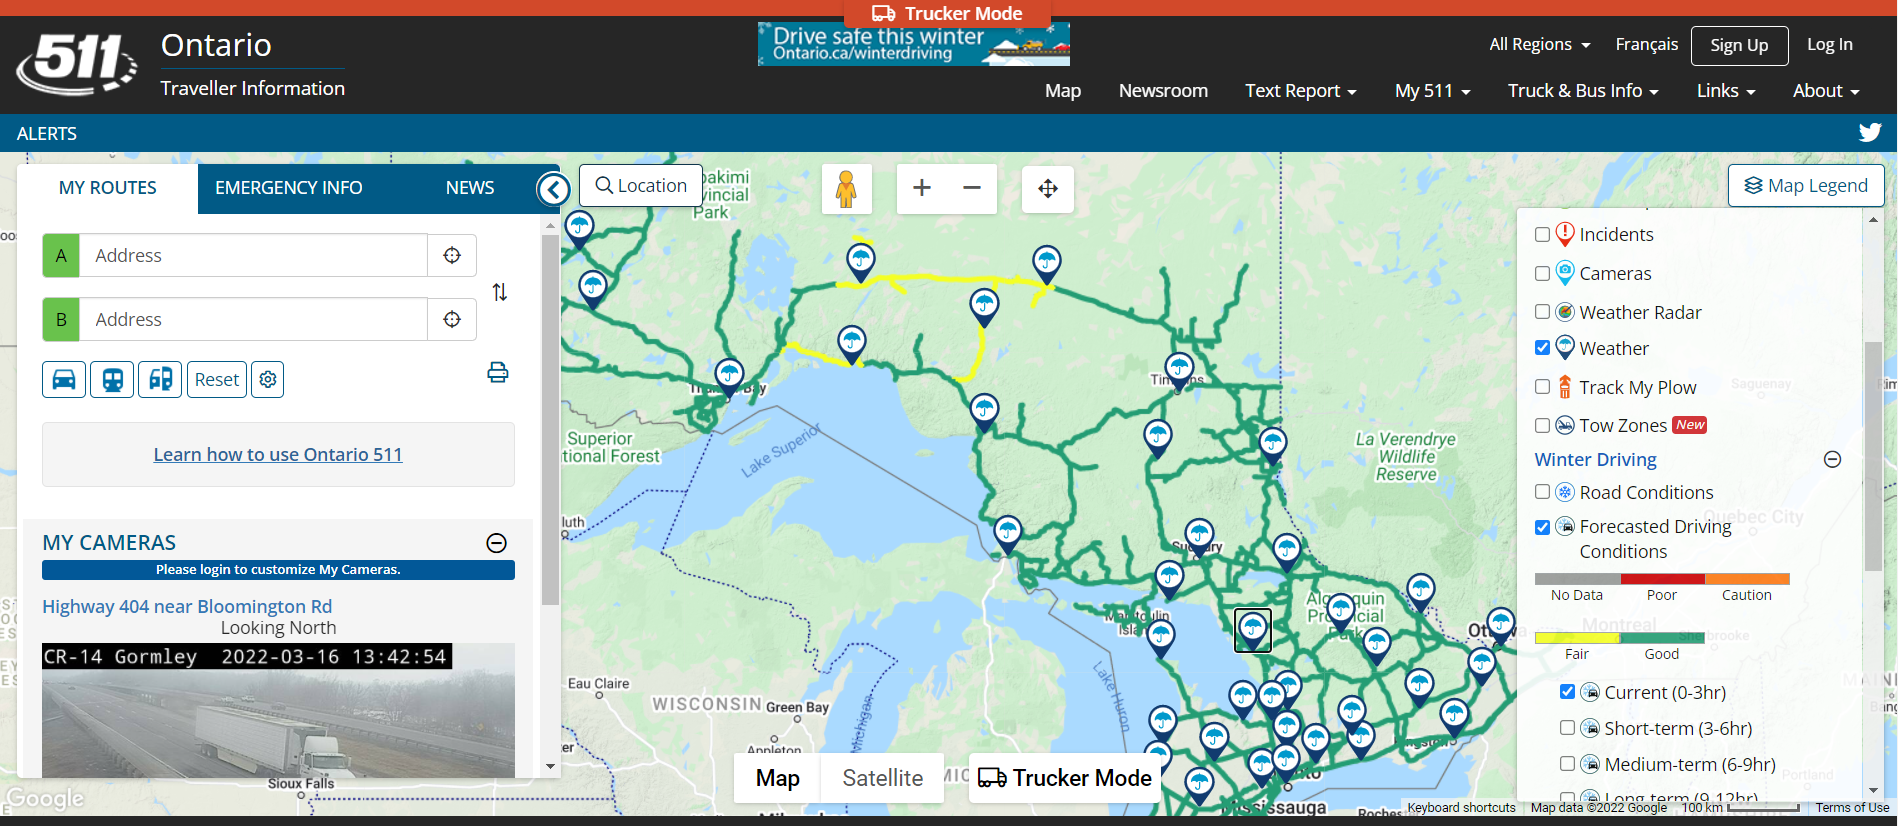 캐나다 Ontraion 511 사이트에서 지도 형태로 제공하는 도로기상 정보 자료 : 캐나다 Ontraio 511 웹사이트(https://511on.ca/?SelectedLayers=RoadConditions#:MyRoutes)